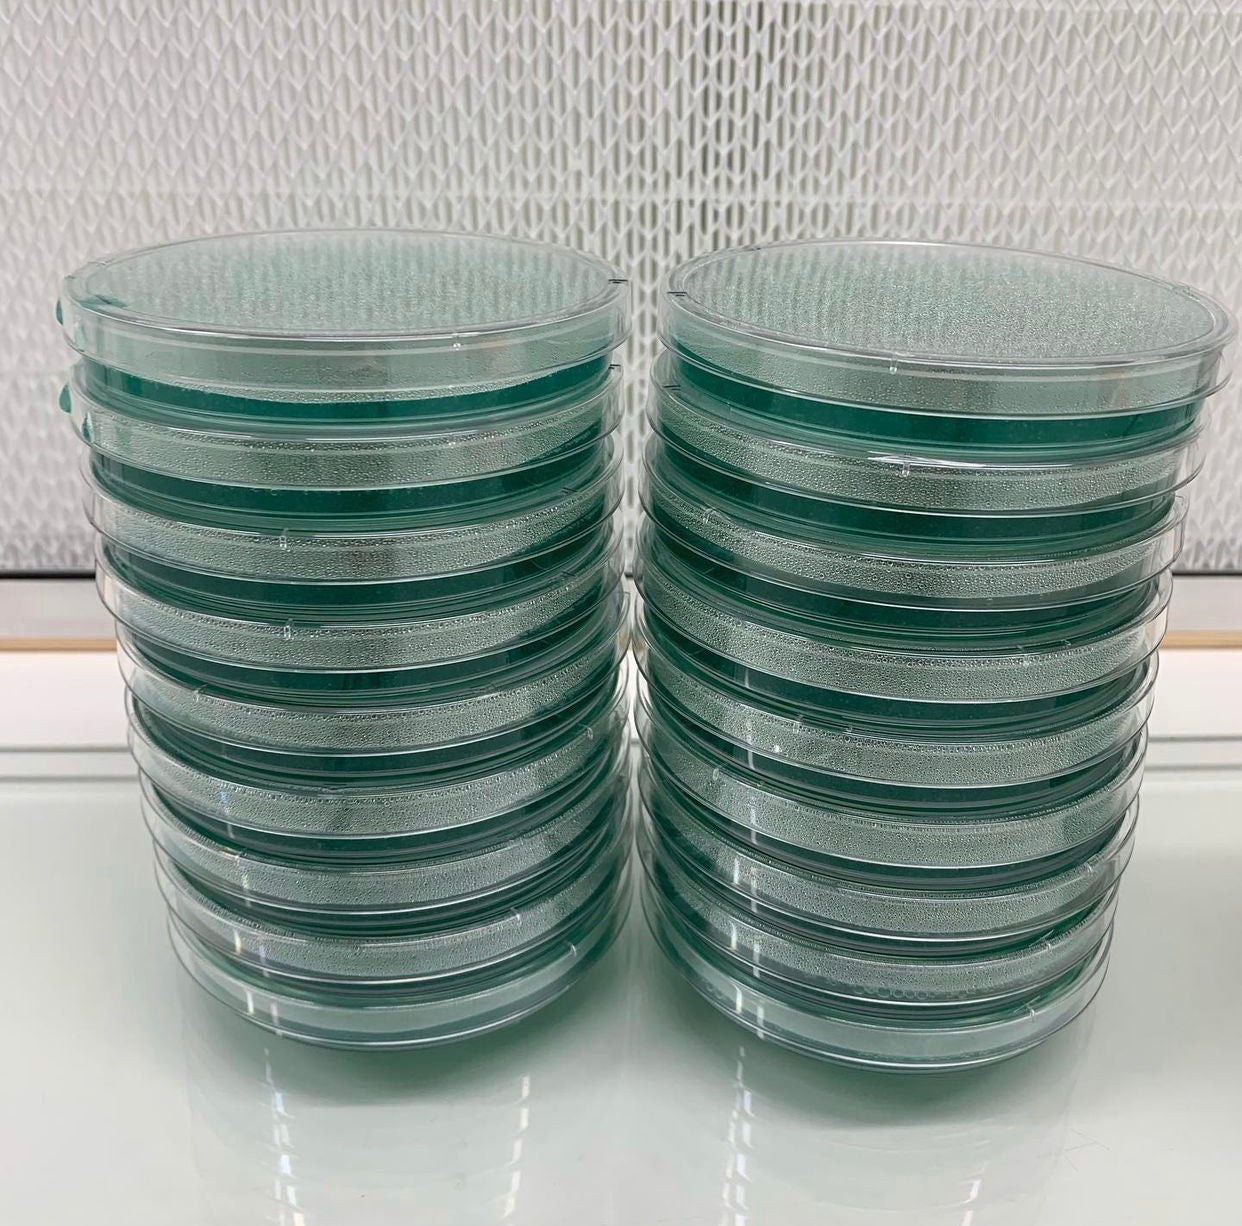 MycoPunks - 10 Light Malt Extract Agar Custom (LME) Petri Dishes for Fungal Cultures - Custom Agar